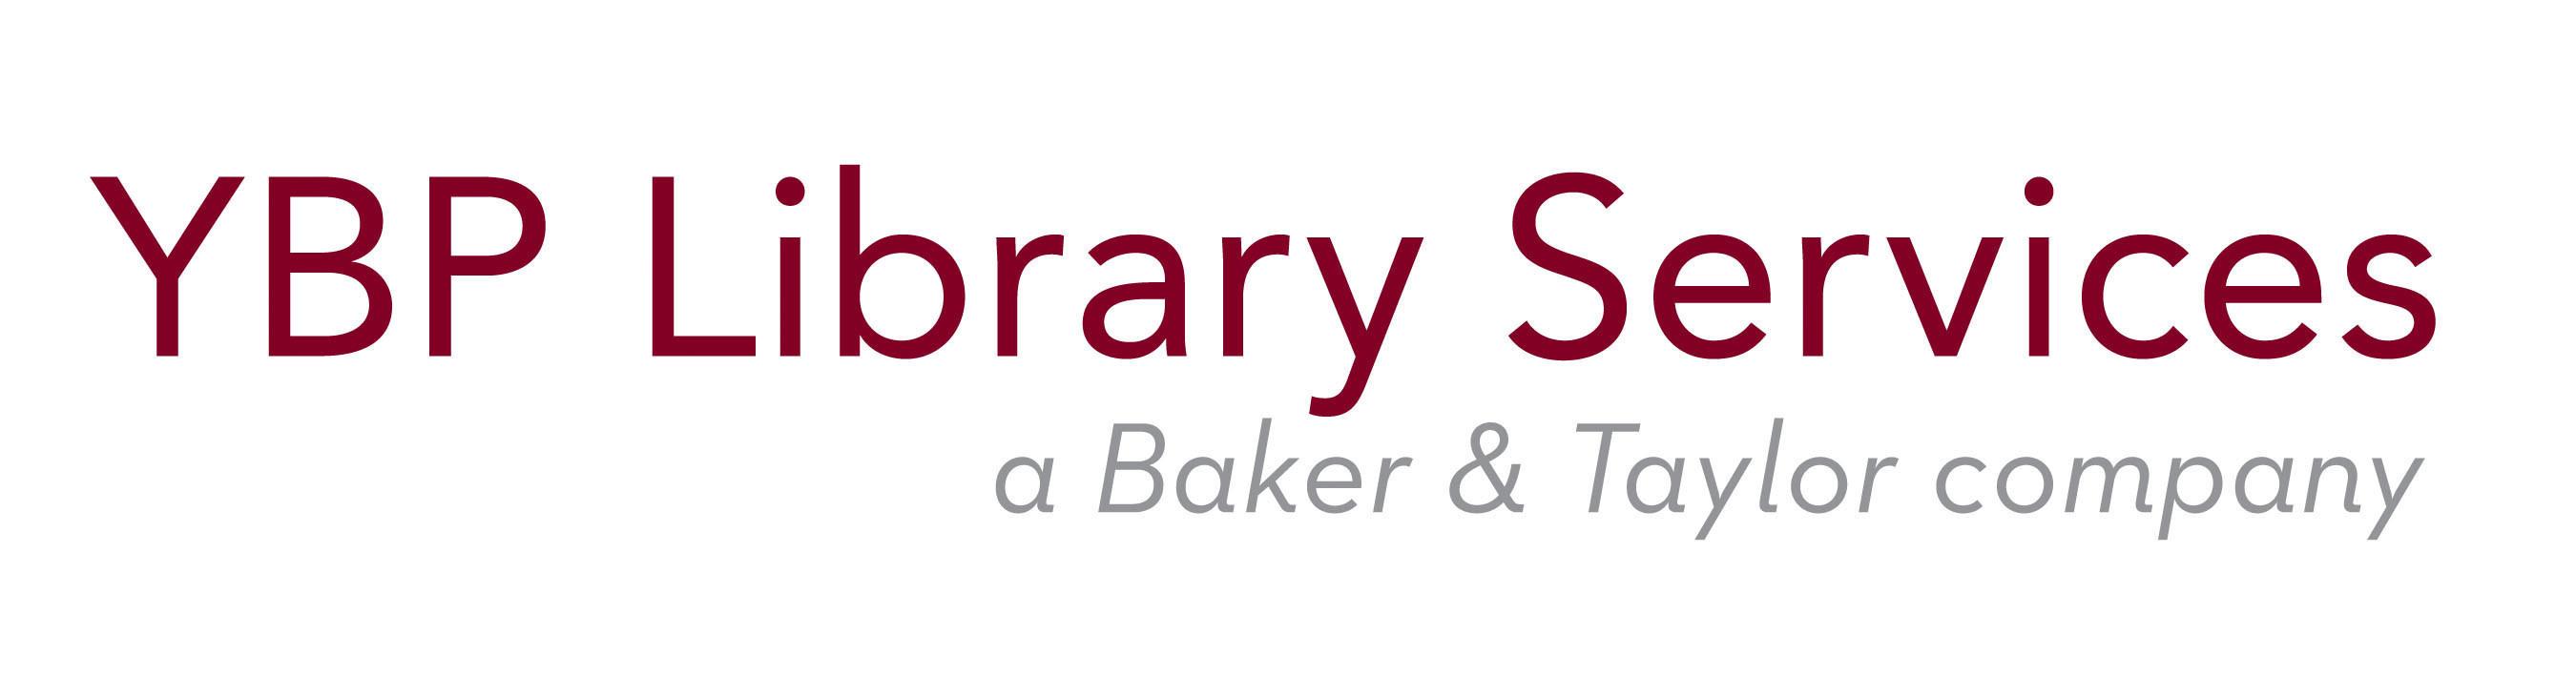 YBP Library Services logo (PRNewsFoto/YBP Library Services)